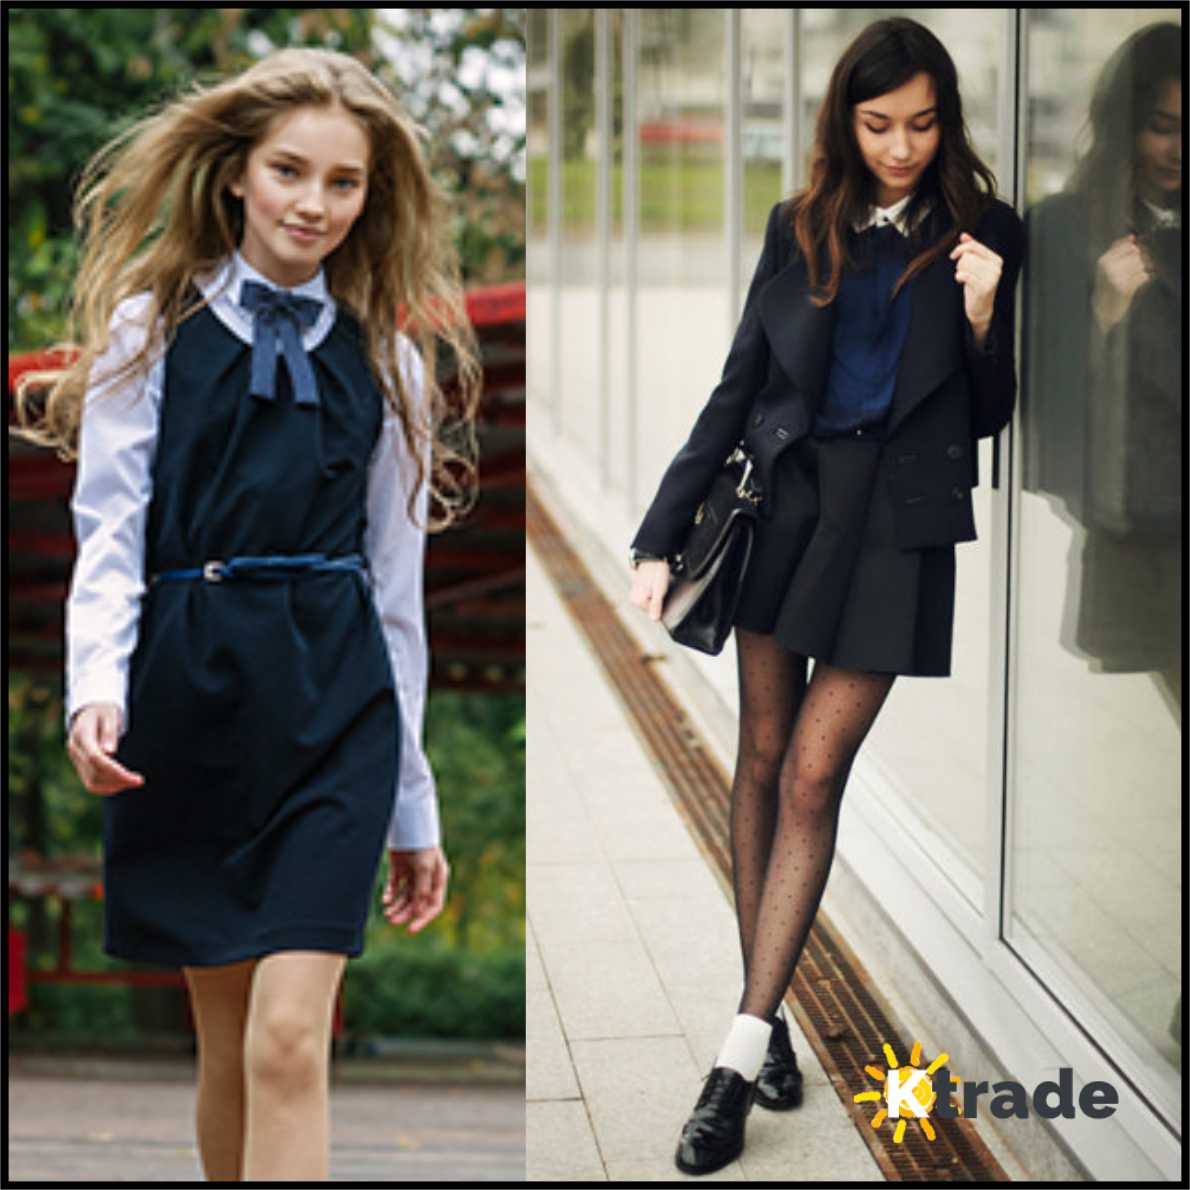 Про школу моду. Модная одежда в школу. Деловой стиль одежды для школьников. Стильный образ для школы подросткам. Деловой стиль одежды в школе.